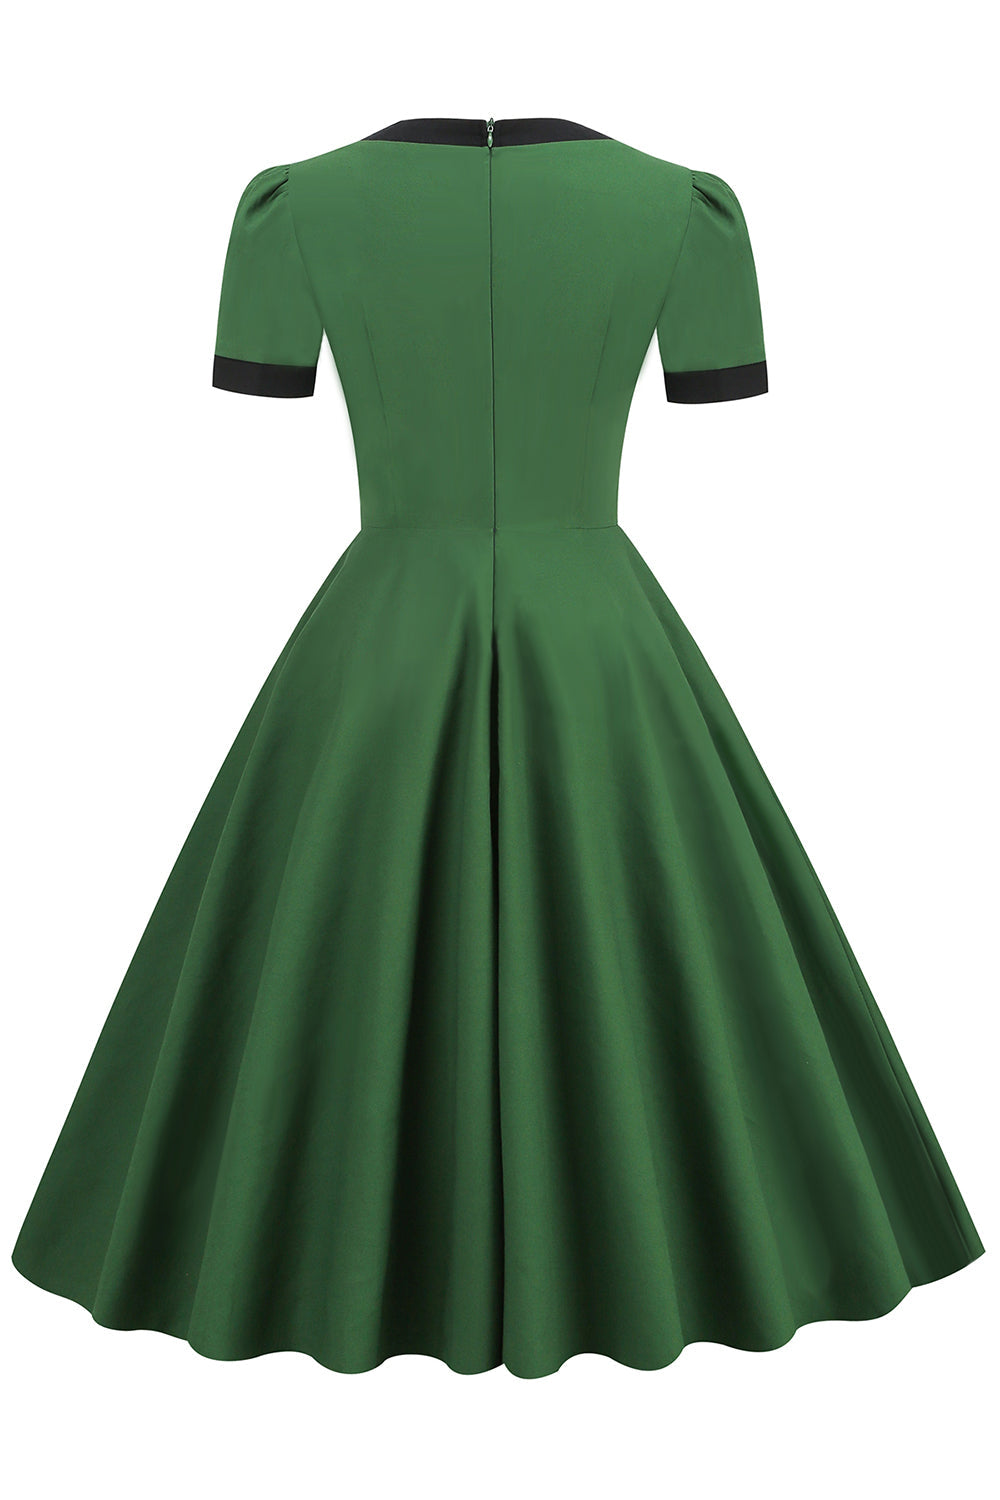 Robe Verte Vintage des années 1950 avec Nœud